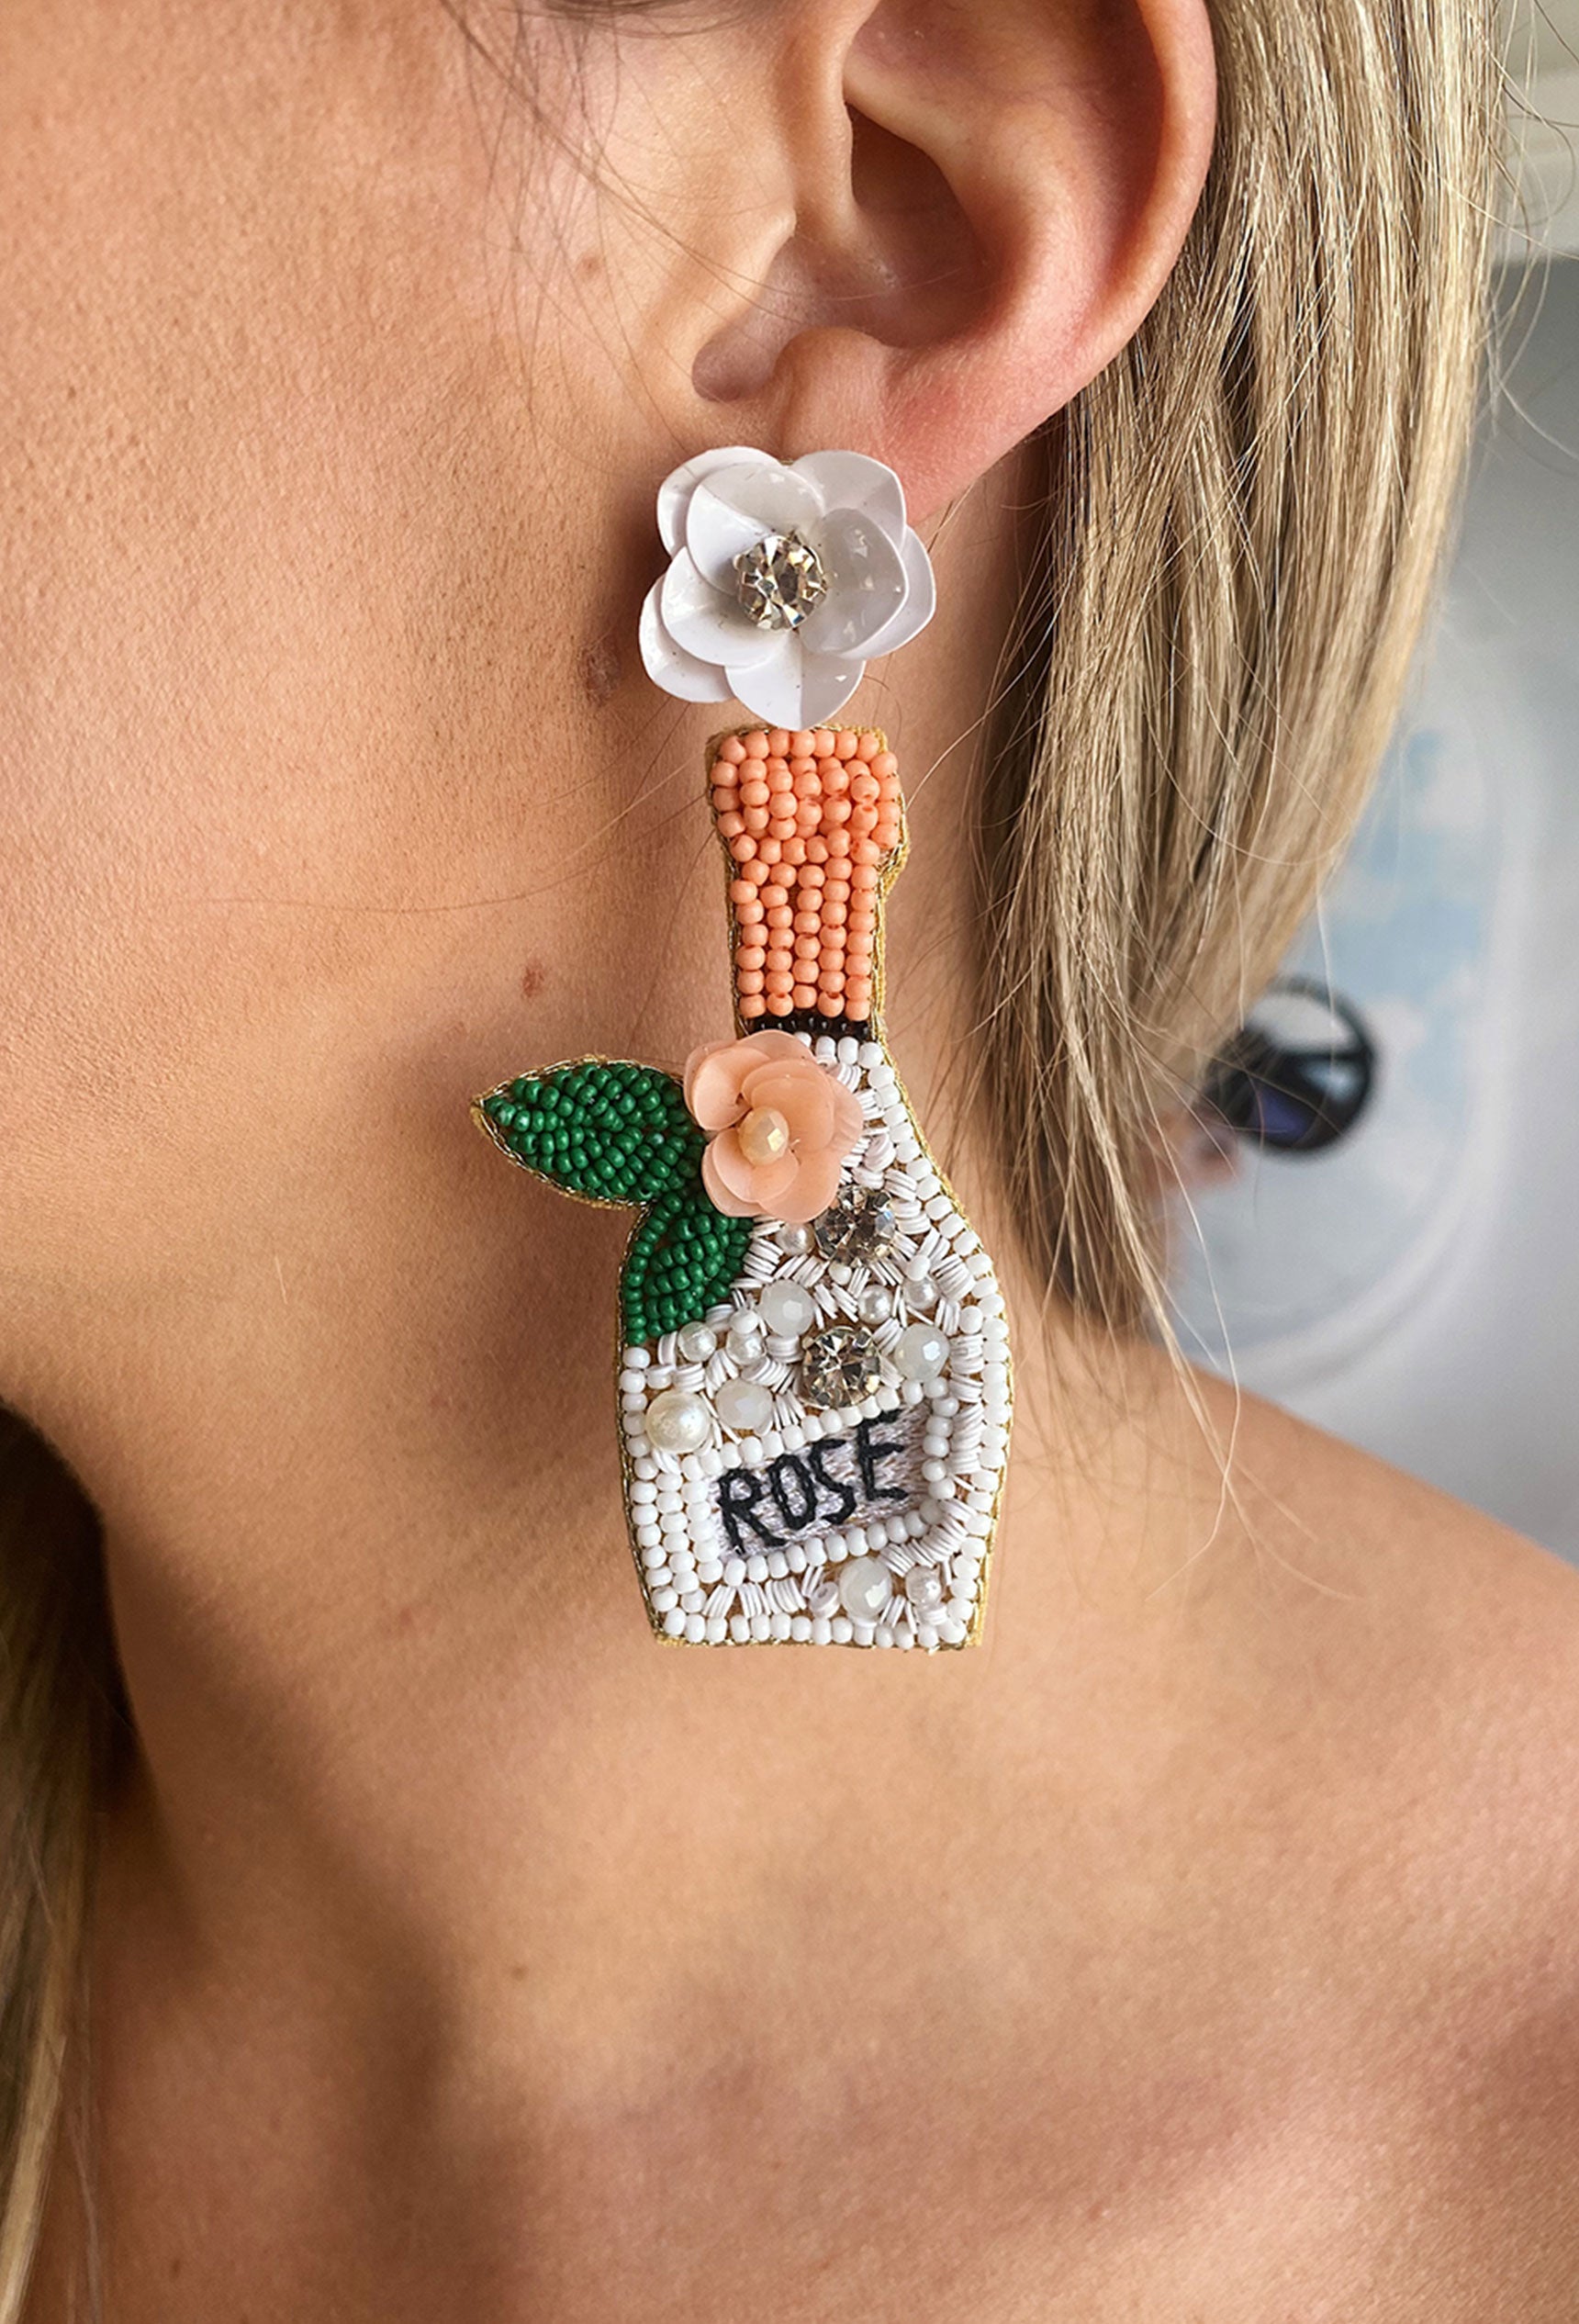 Popping Rose Beaded Earrings, beaded earrings in the shape of a rose bottle